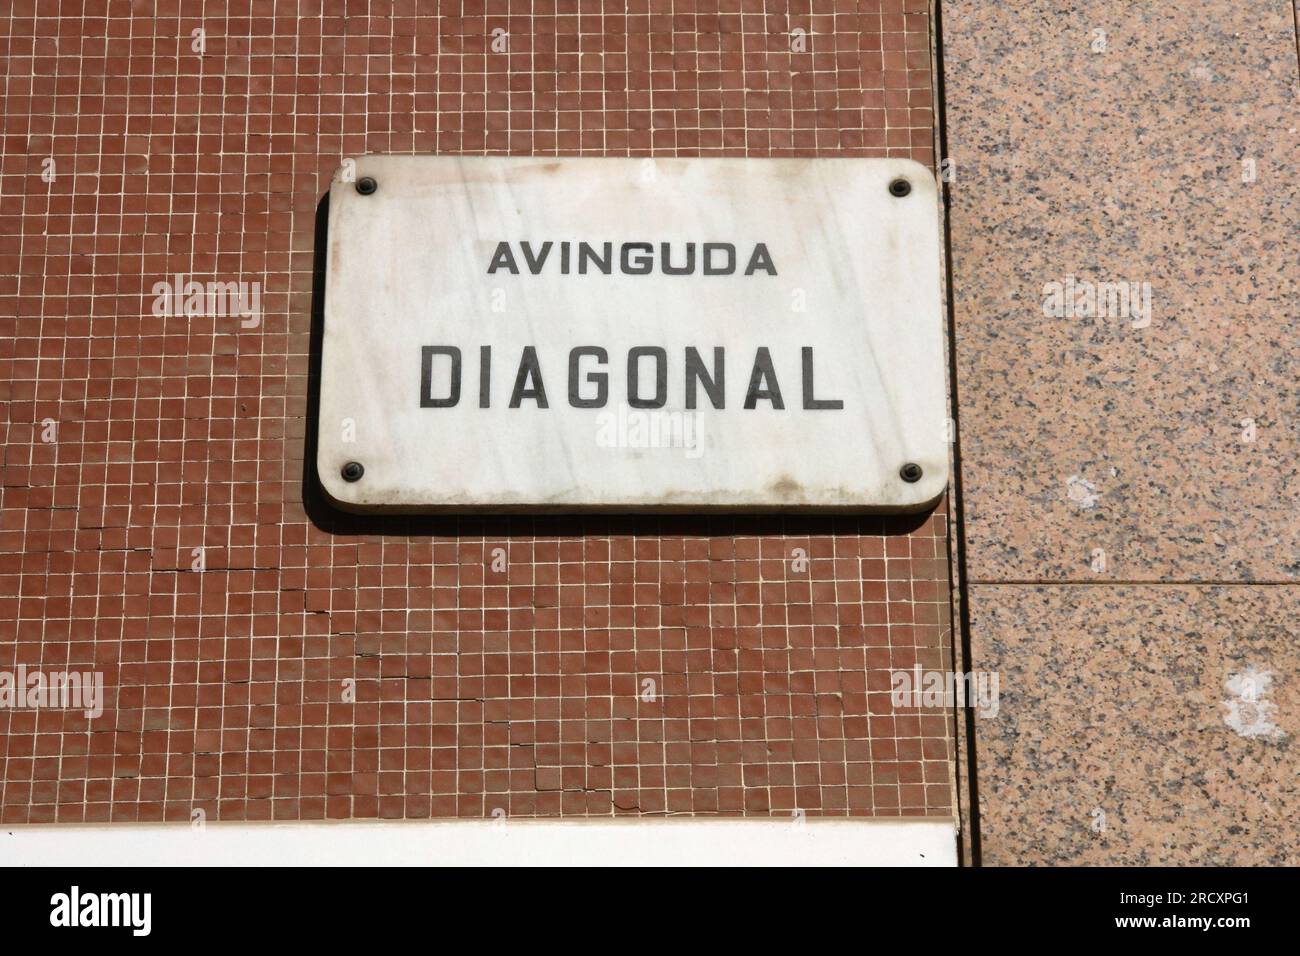 Street name in Barcelona - Avinguda Diagonal. Important street in Barcelona. Stock Photo